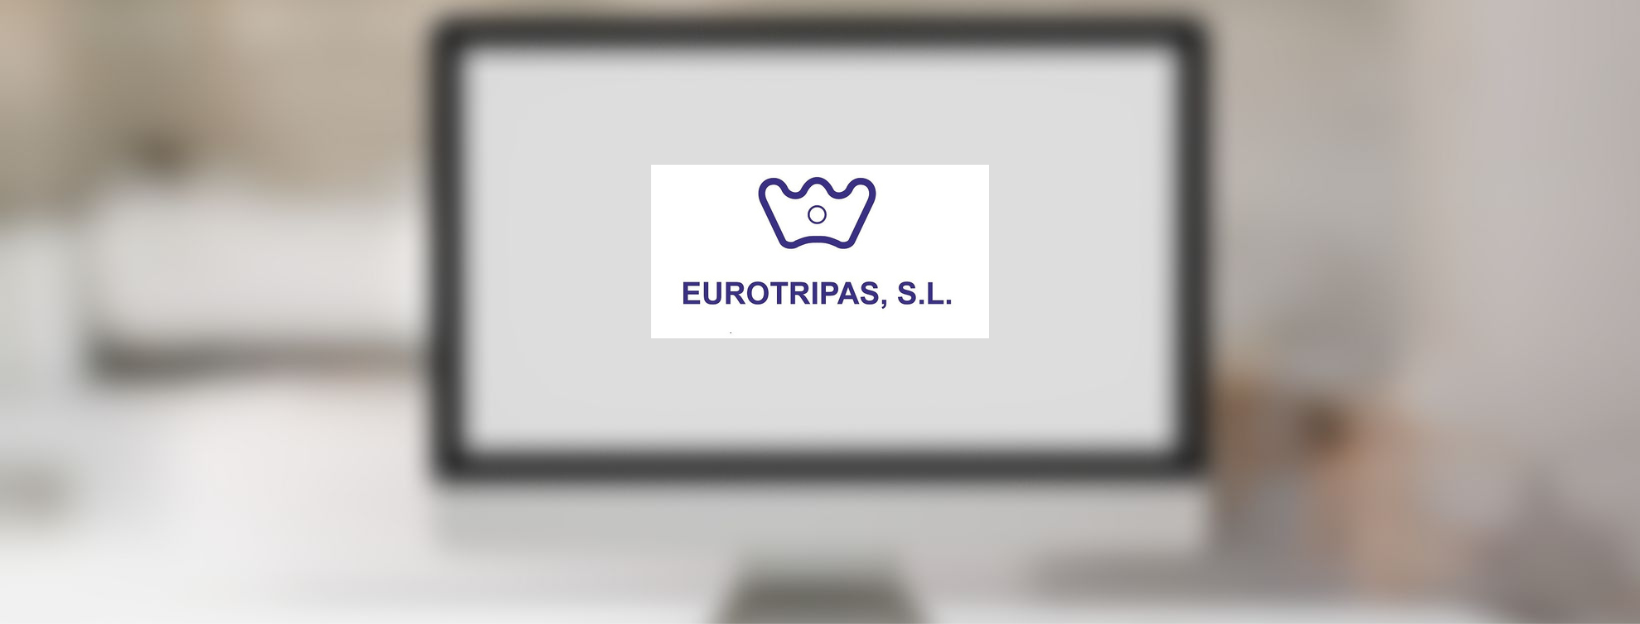 Nova pàgina web per Eurotripas, S.L.